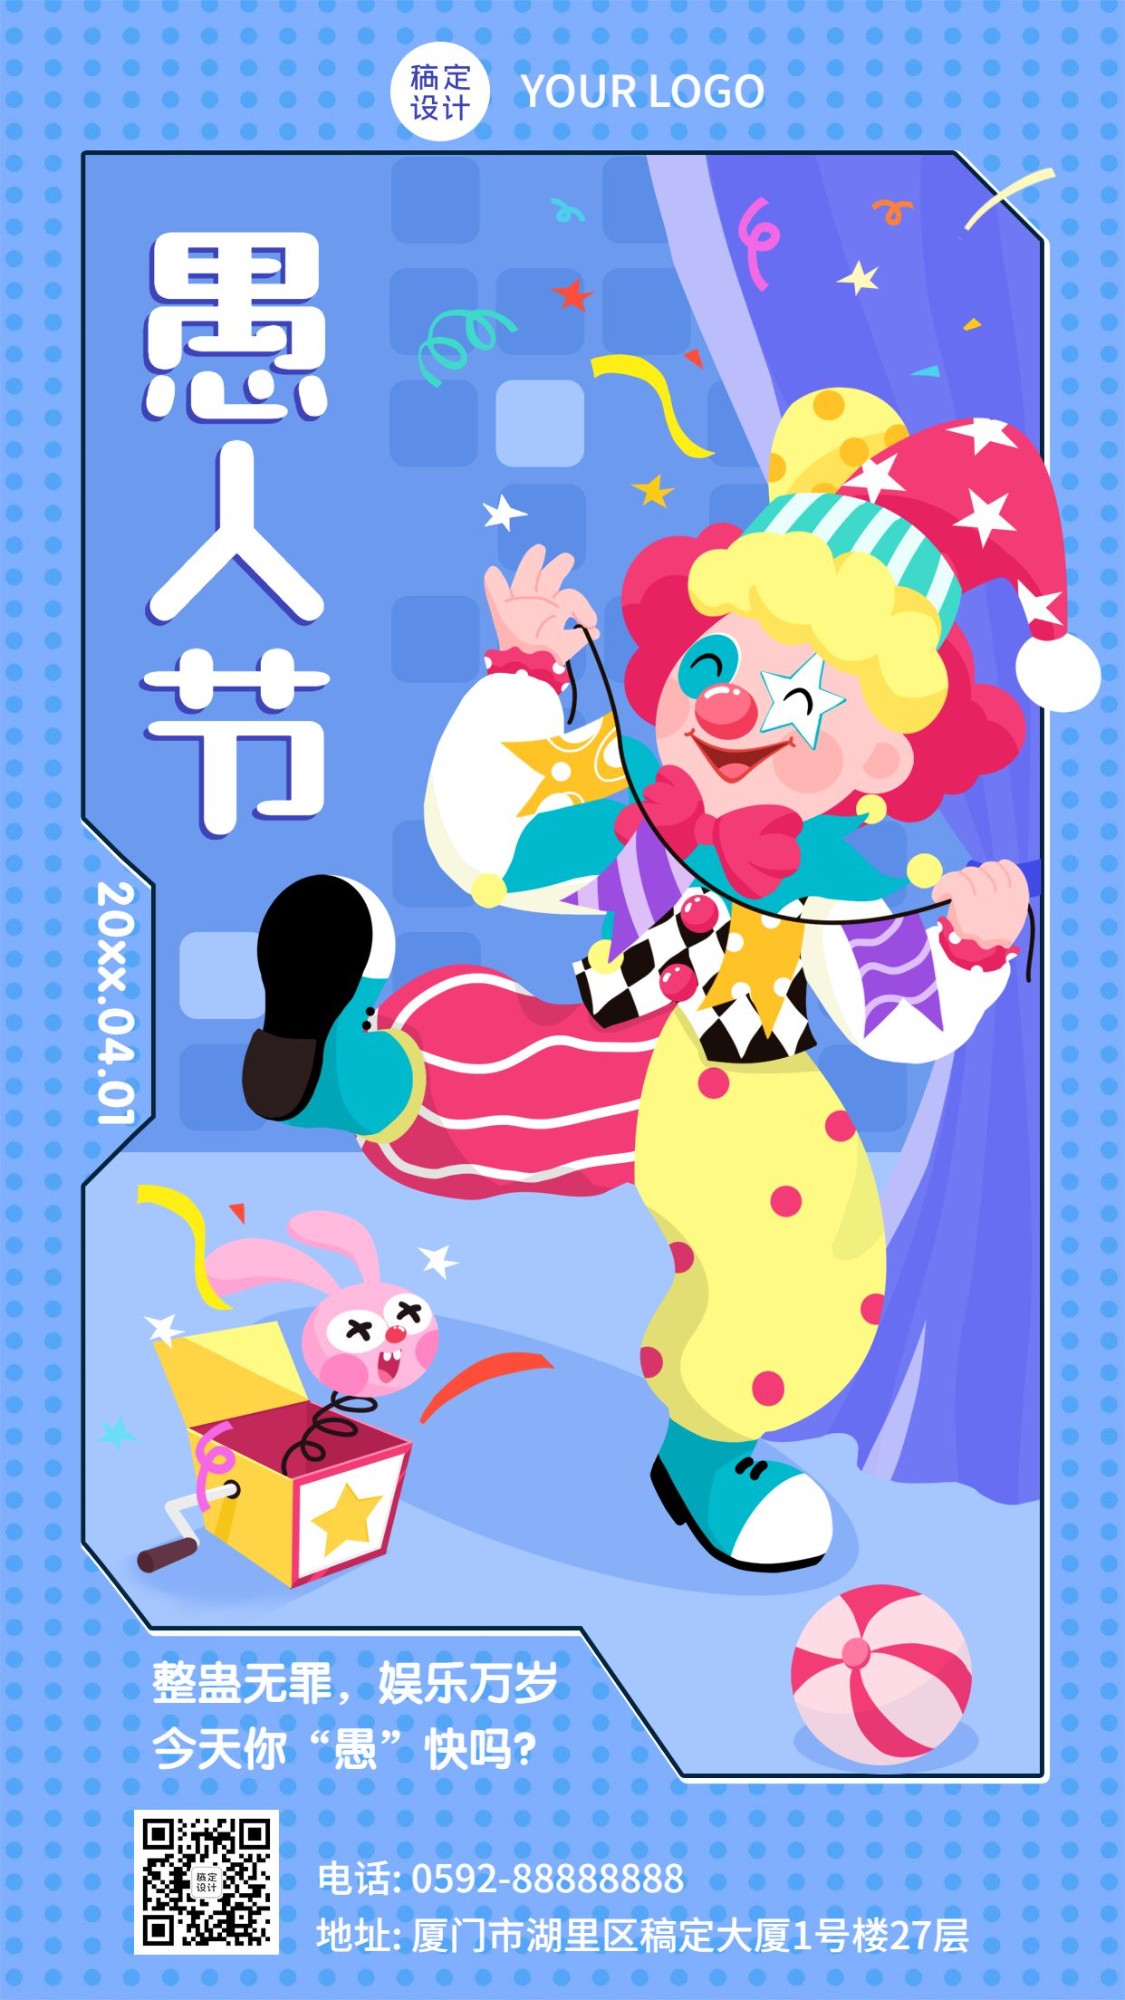 愚人节节日祝福小丑人物手机海报